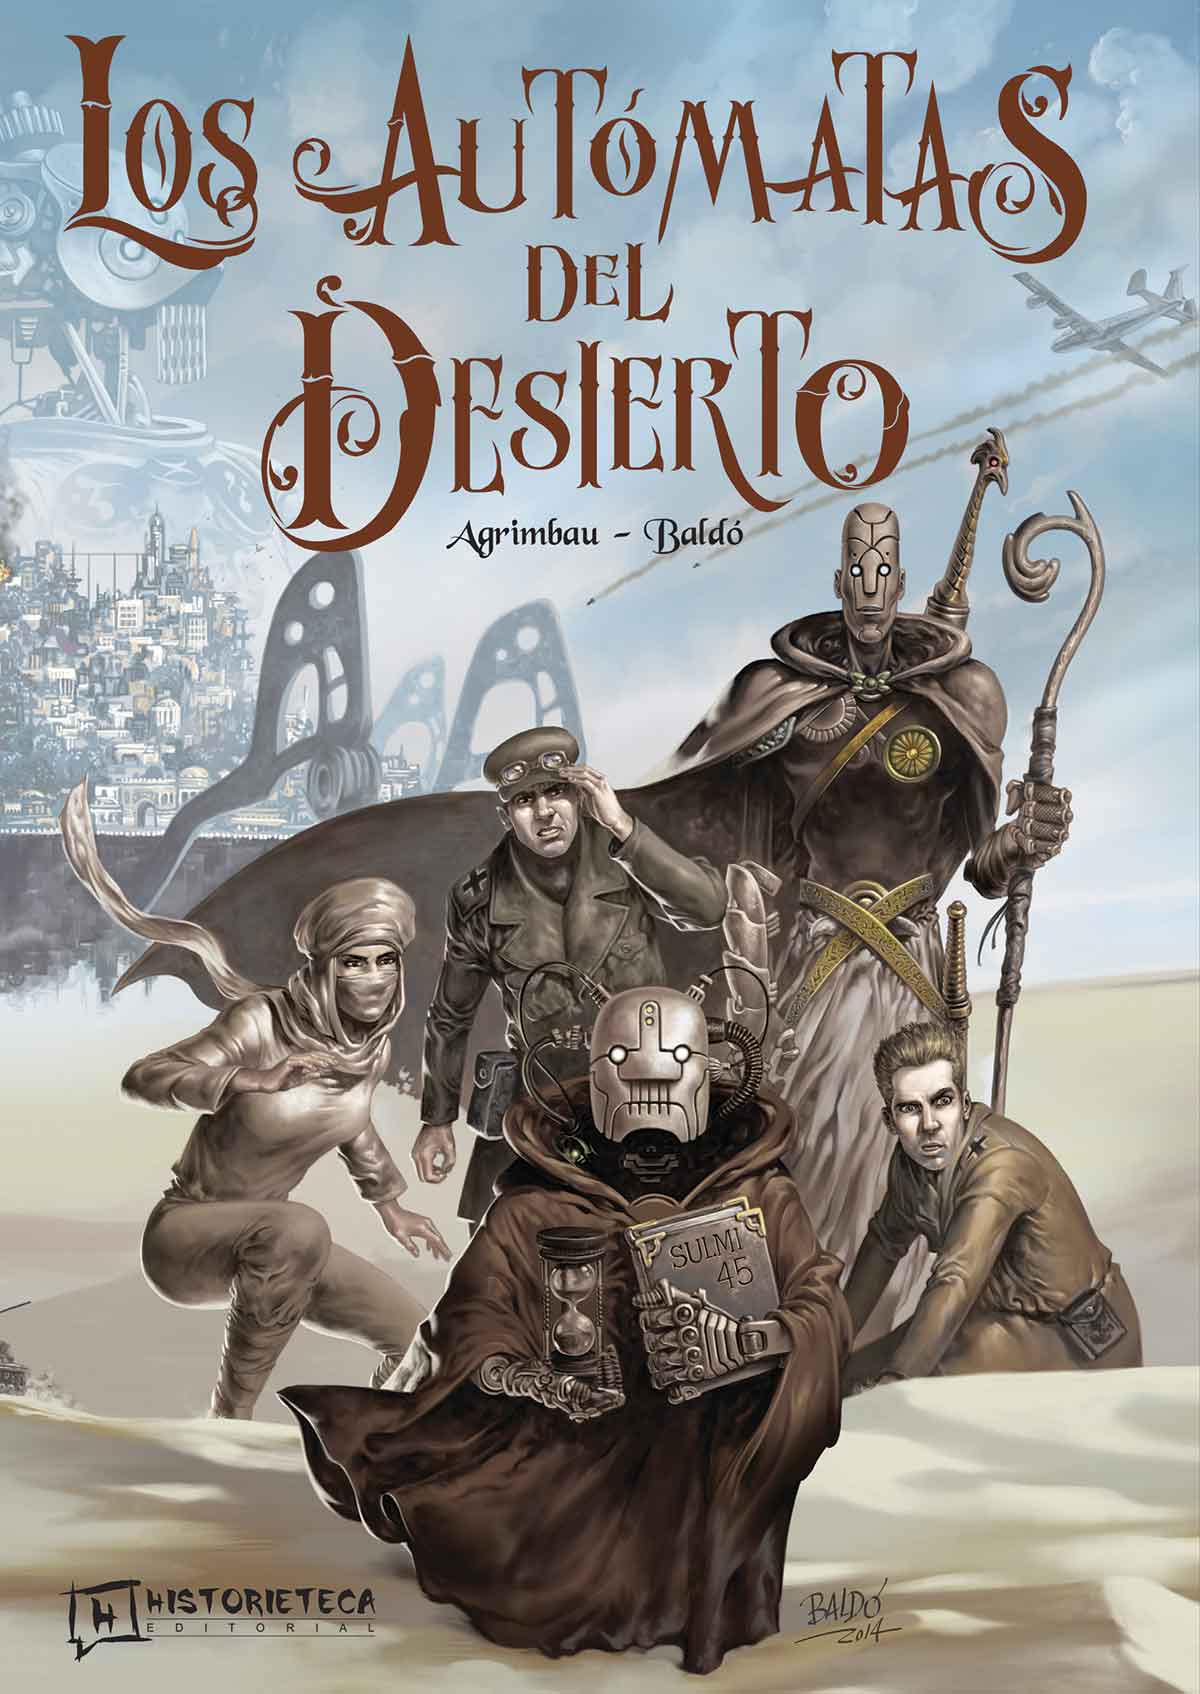 Los autómatas del desierto, de Diego Agrimbau y Fernando Baldó